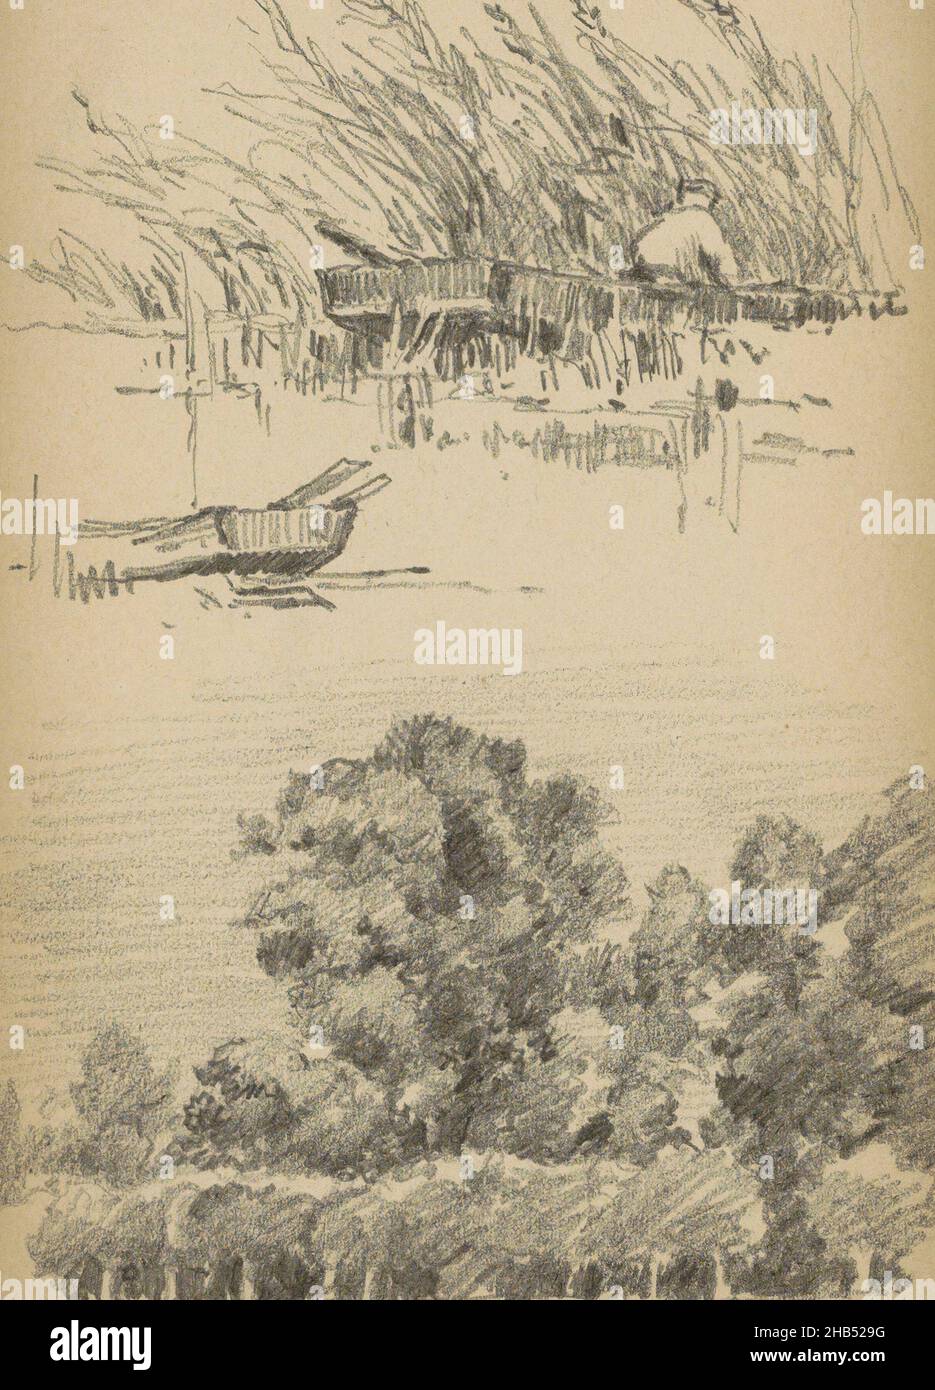 Foglio 18 recto da un libro di schizzo con 34 fogli, uomo seduto su un fronte mare, una barca a remi e un paesaggio con alberi, Alexander Shilling, 1888 Foto Stock